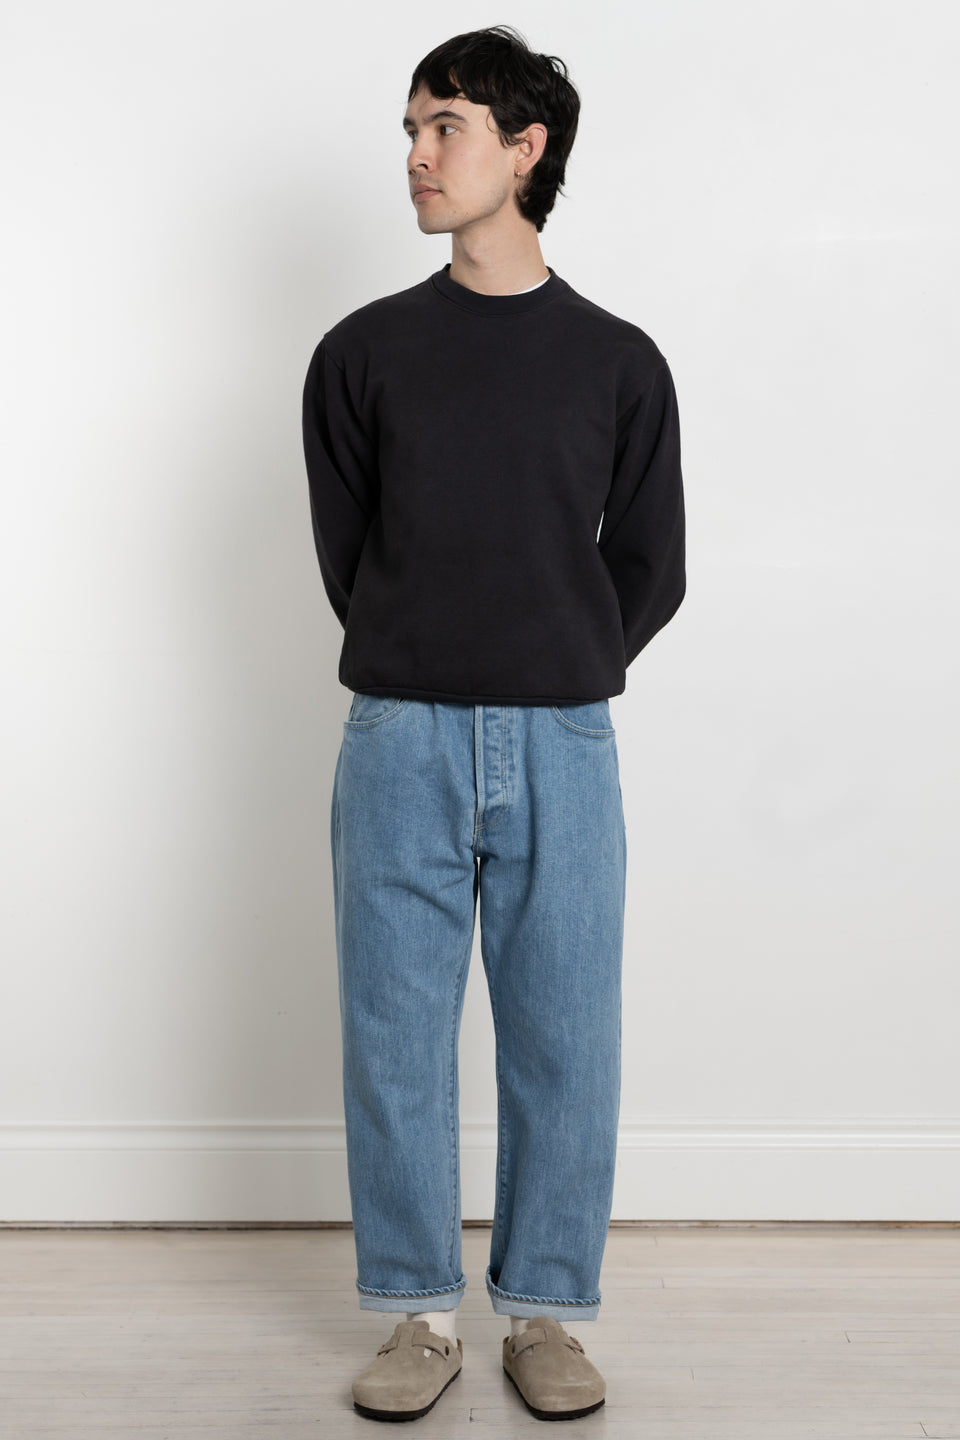 Garment Dyed US Cotton Heavy Fleece Crewneck Sweatshirt Men's Made in USA Calculus Online